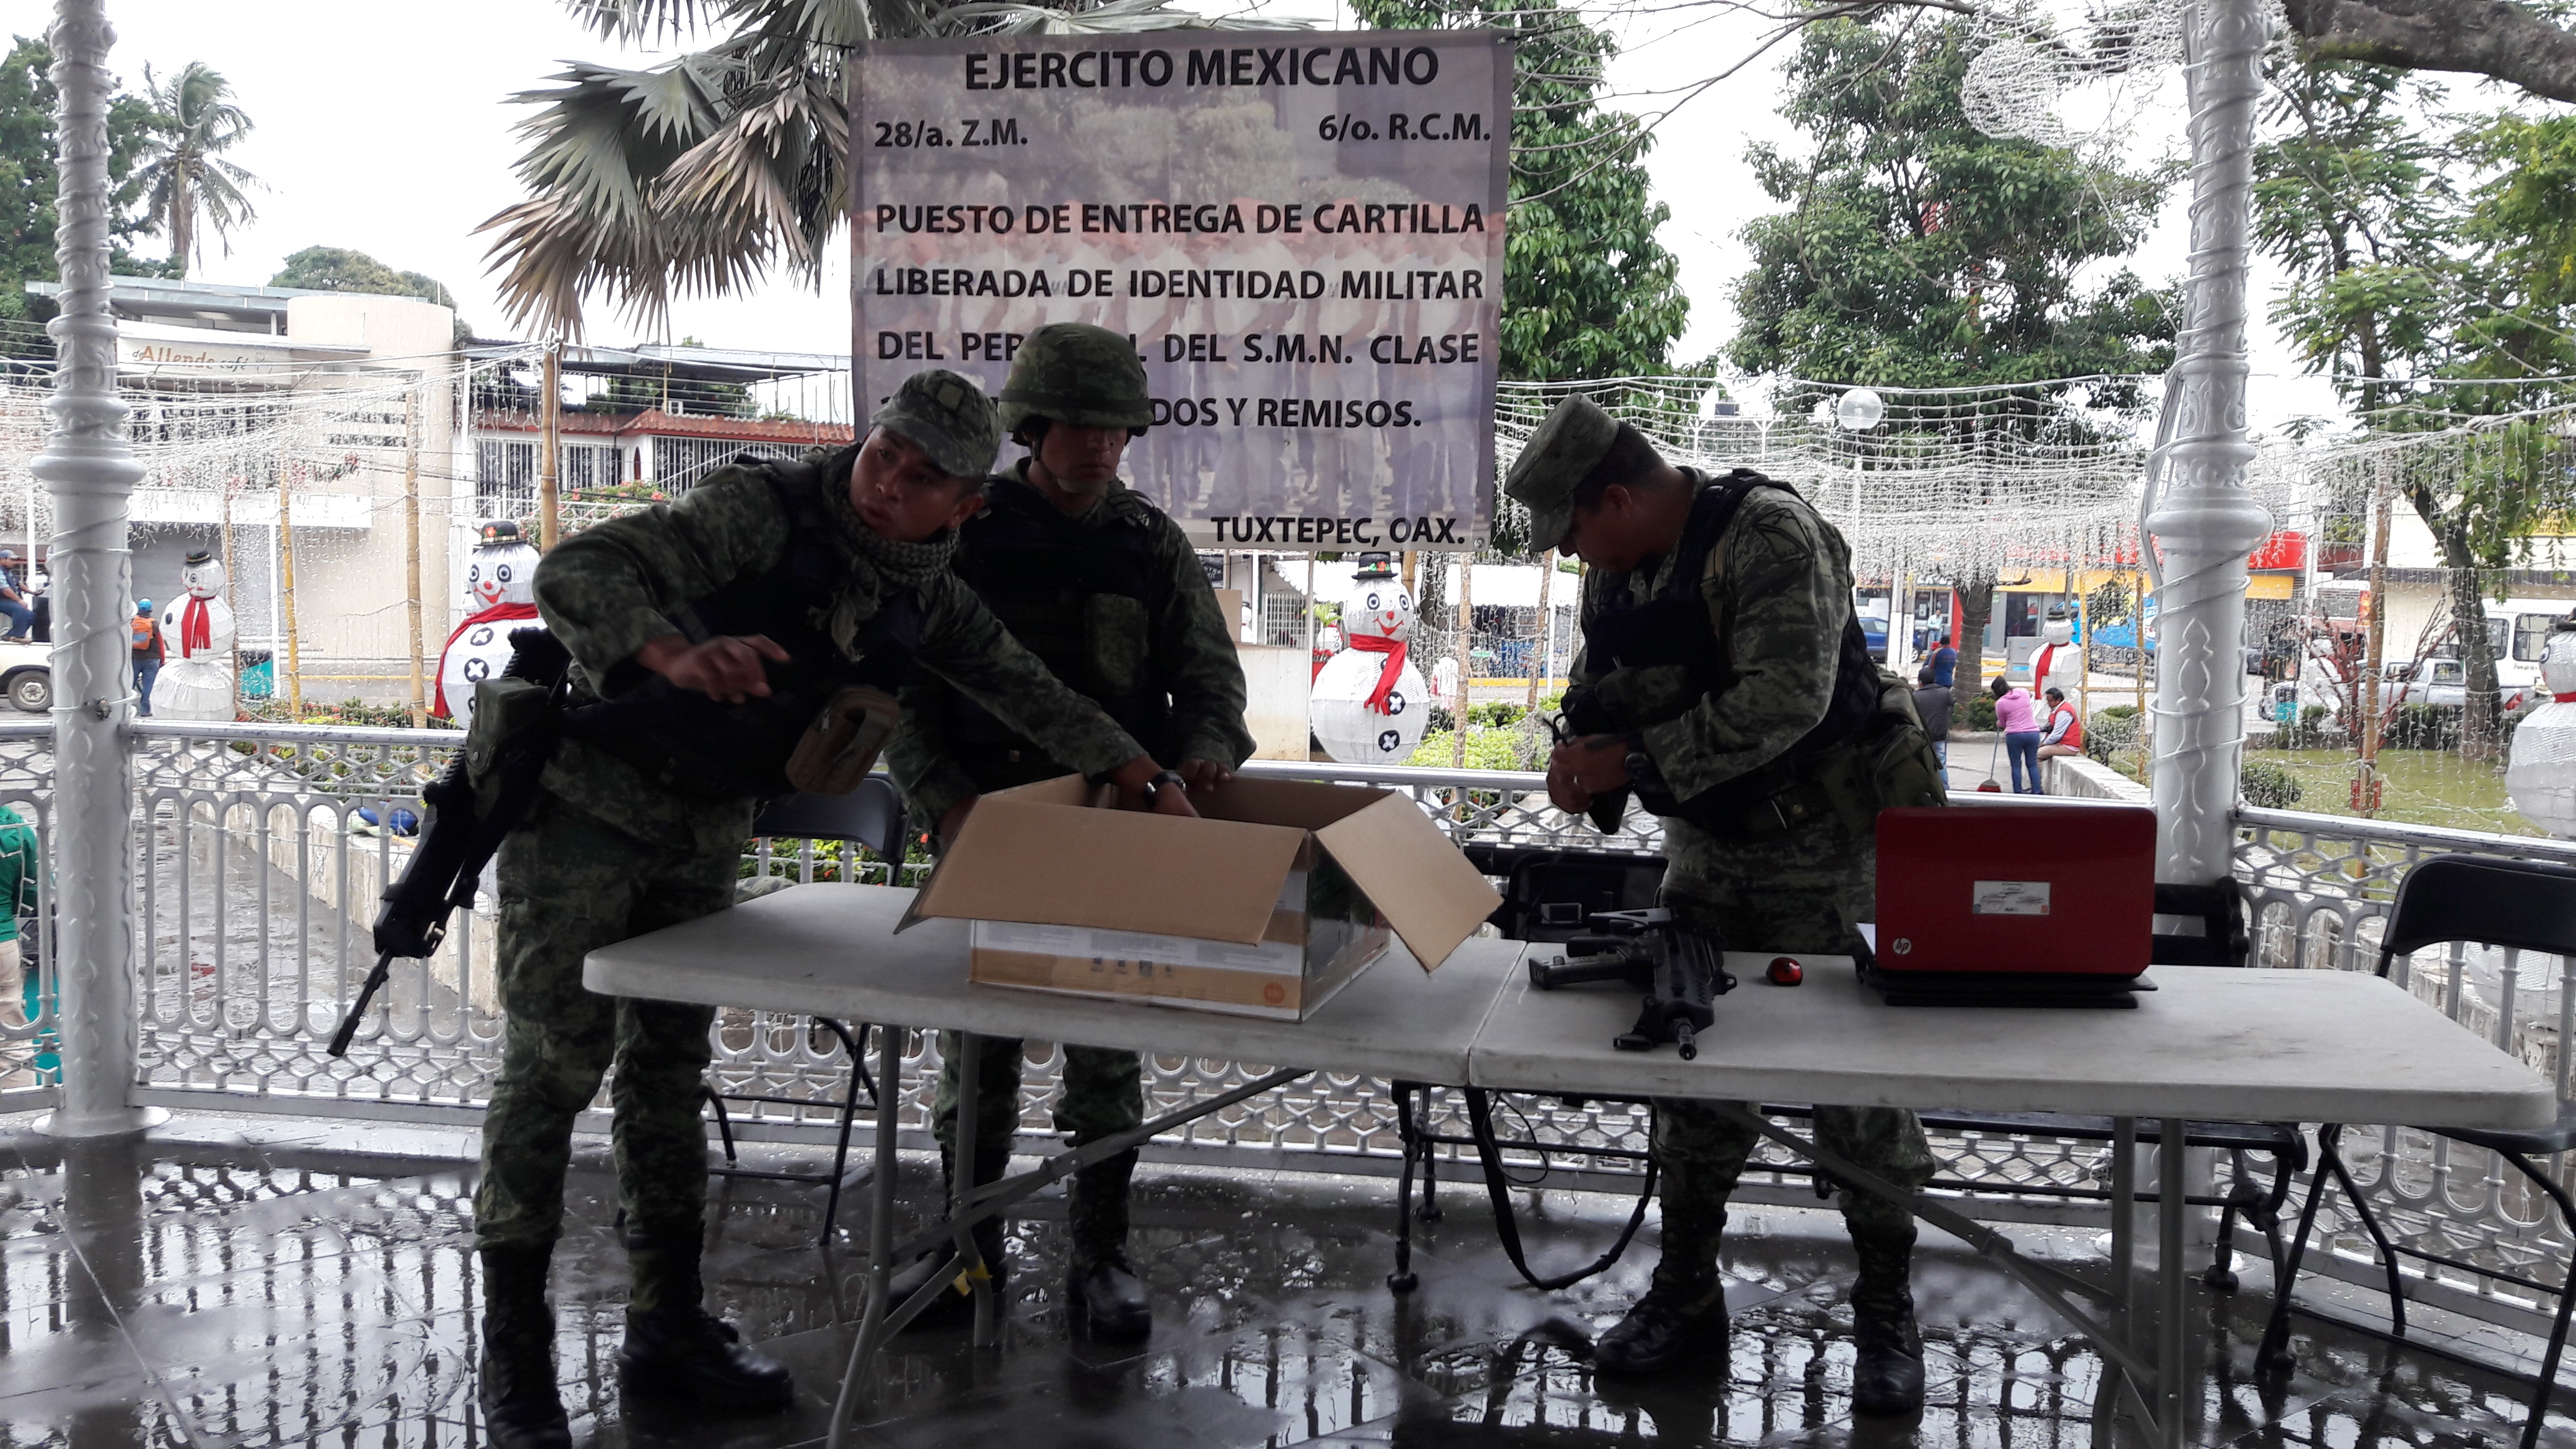 Ejército entrega cartillas de Servicio Militar liberadas en Tuxtepec | El Imparcial de Oaxaca